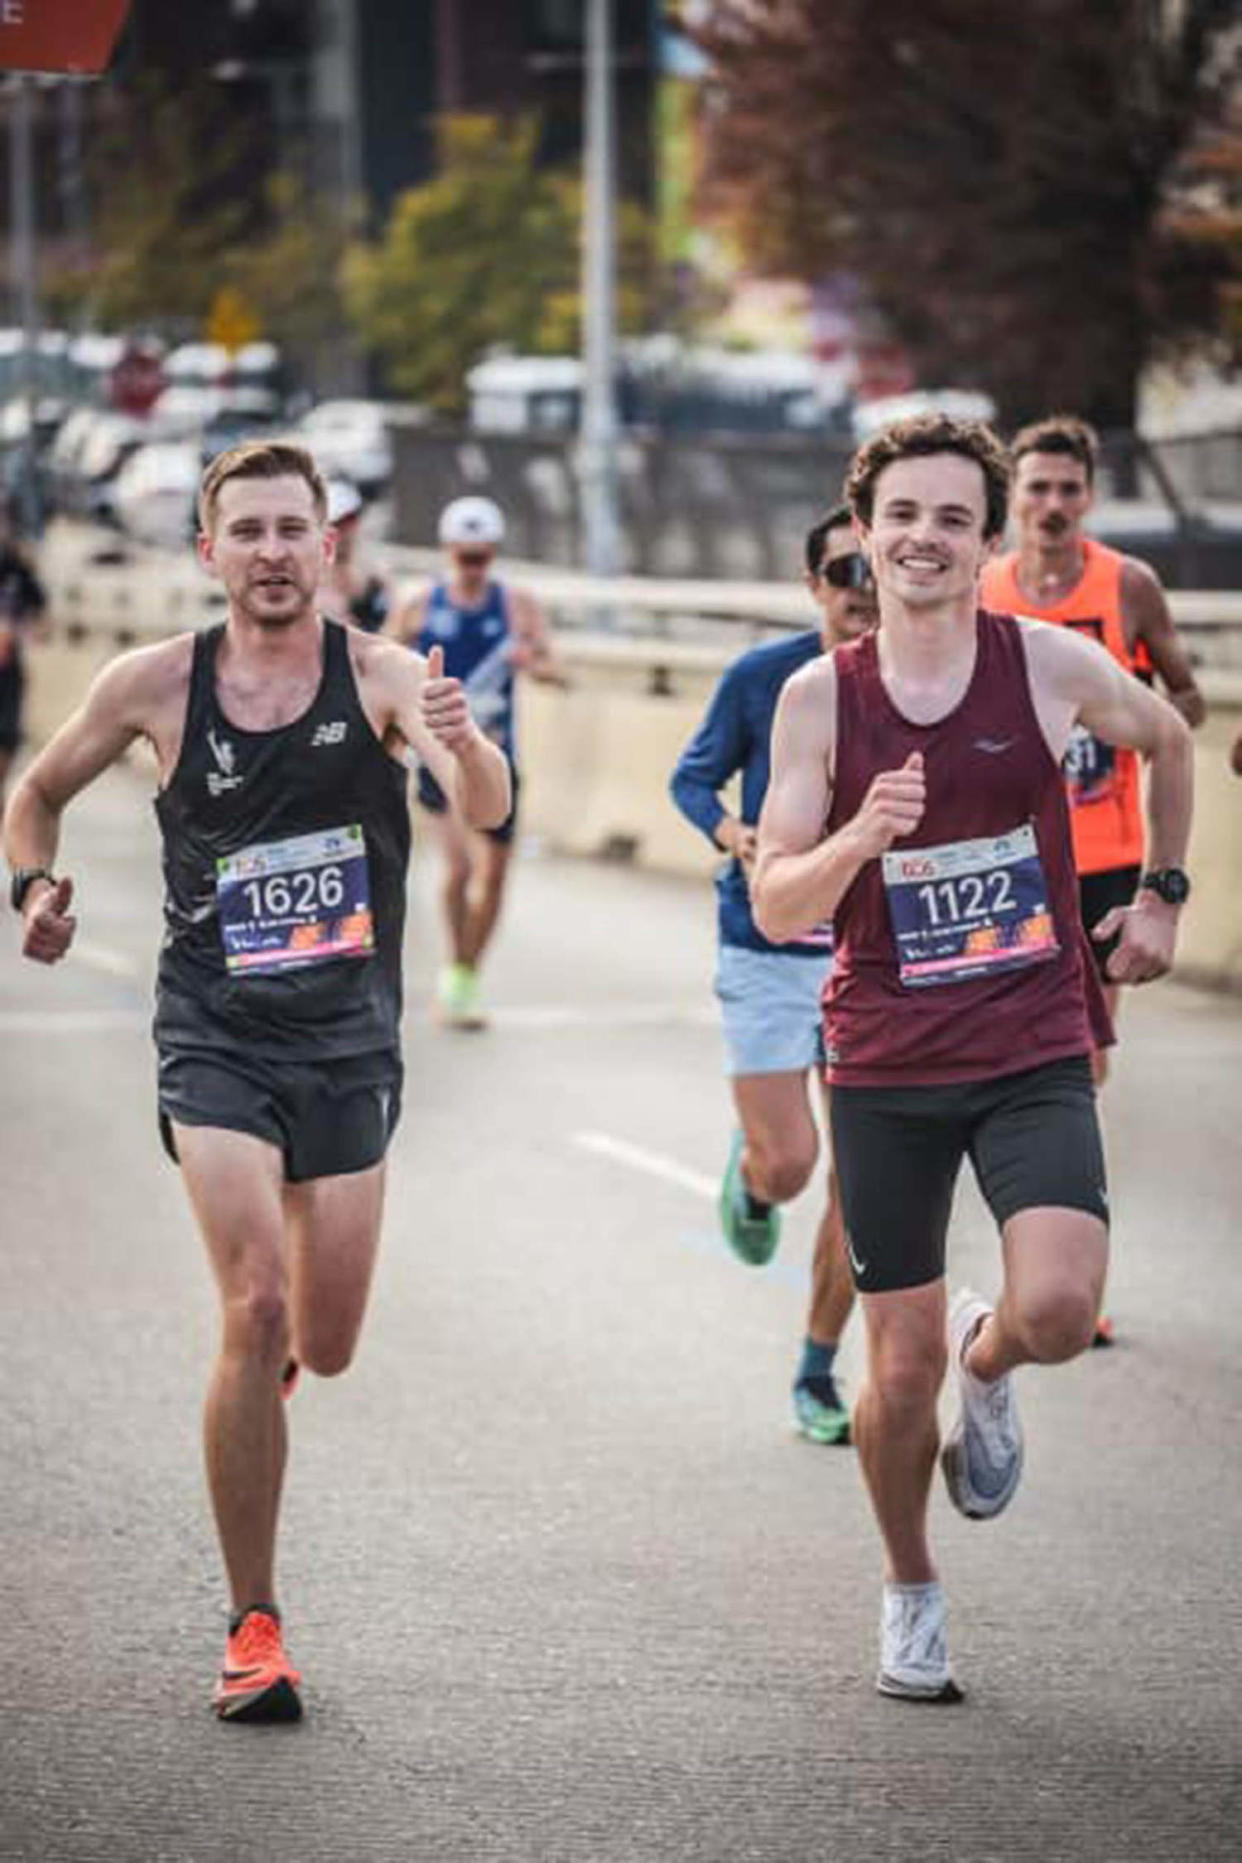 Sam Anderson, Marathon (Gregor Janas / Courtesy Sam Anderson)